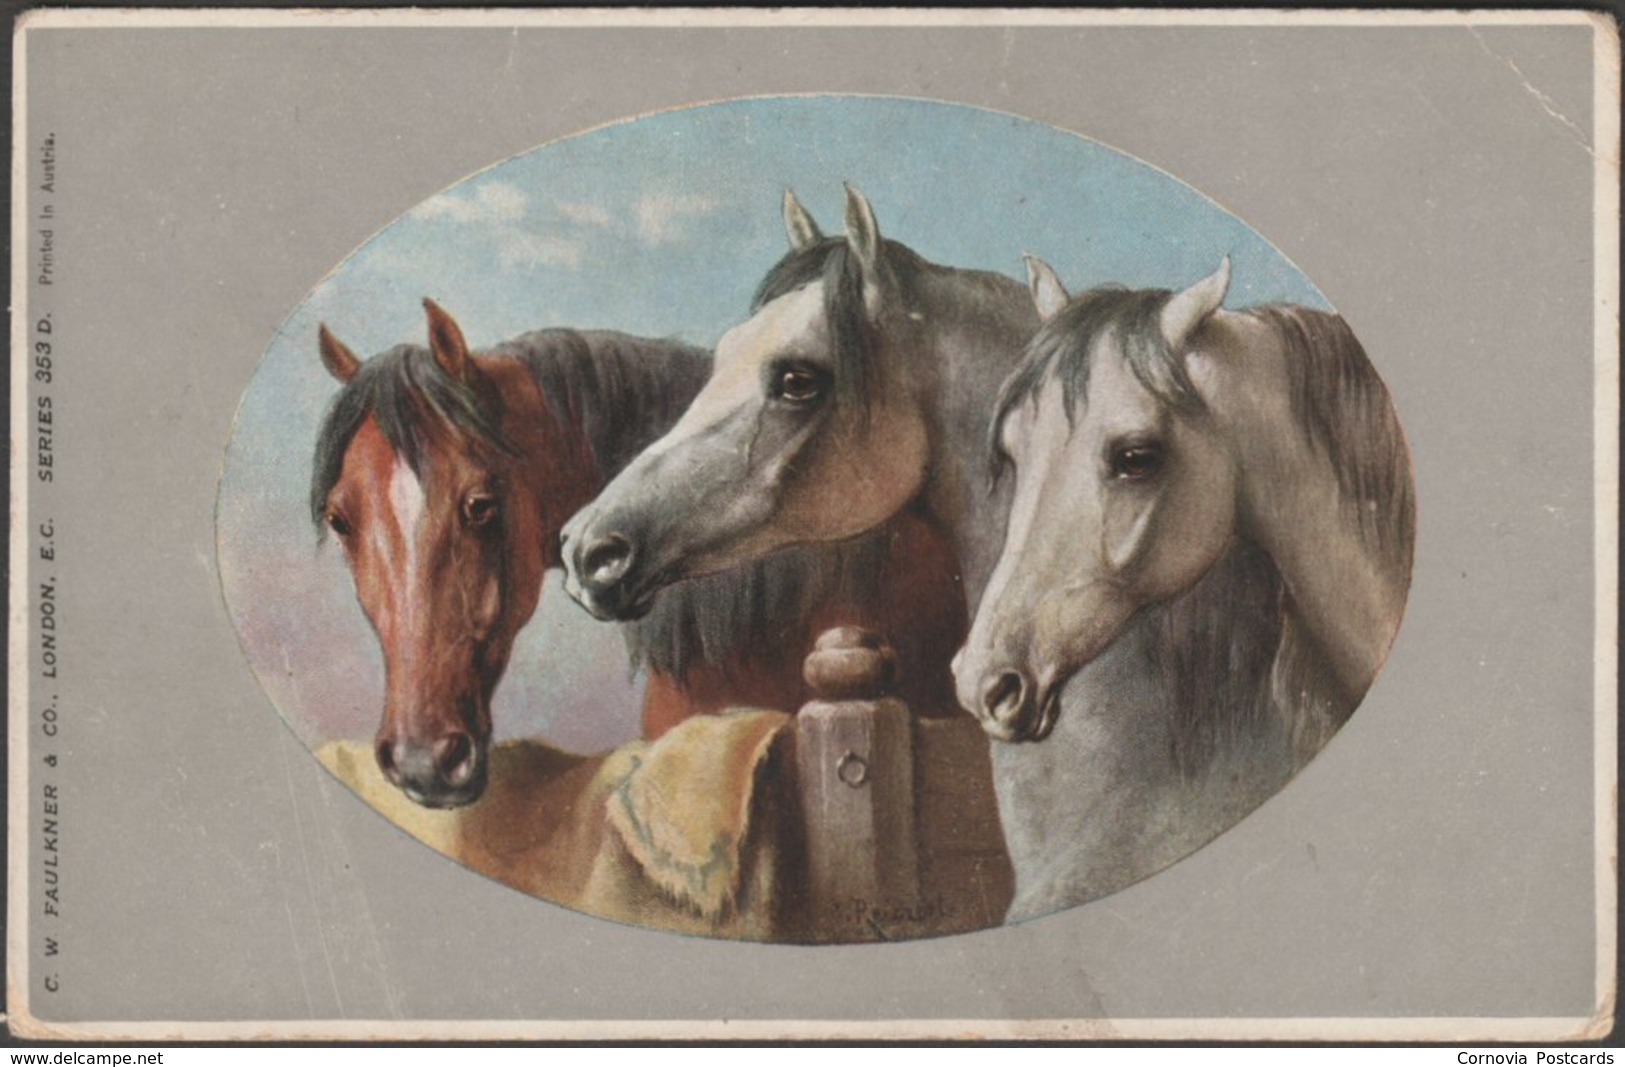 Horses - Three Stablemates, C.1905-10 - CW Faulkner Postcard - Horses